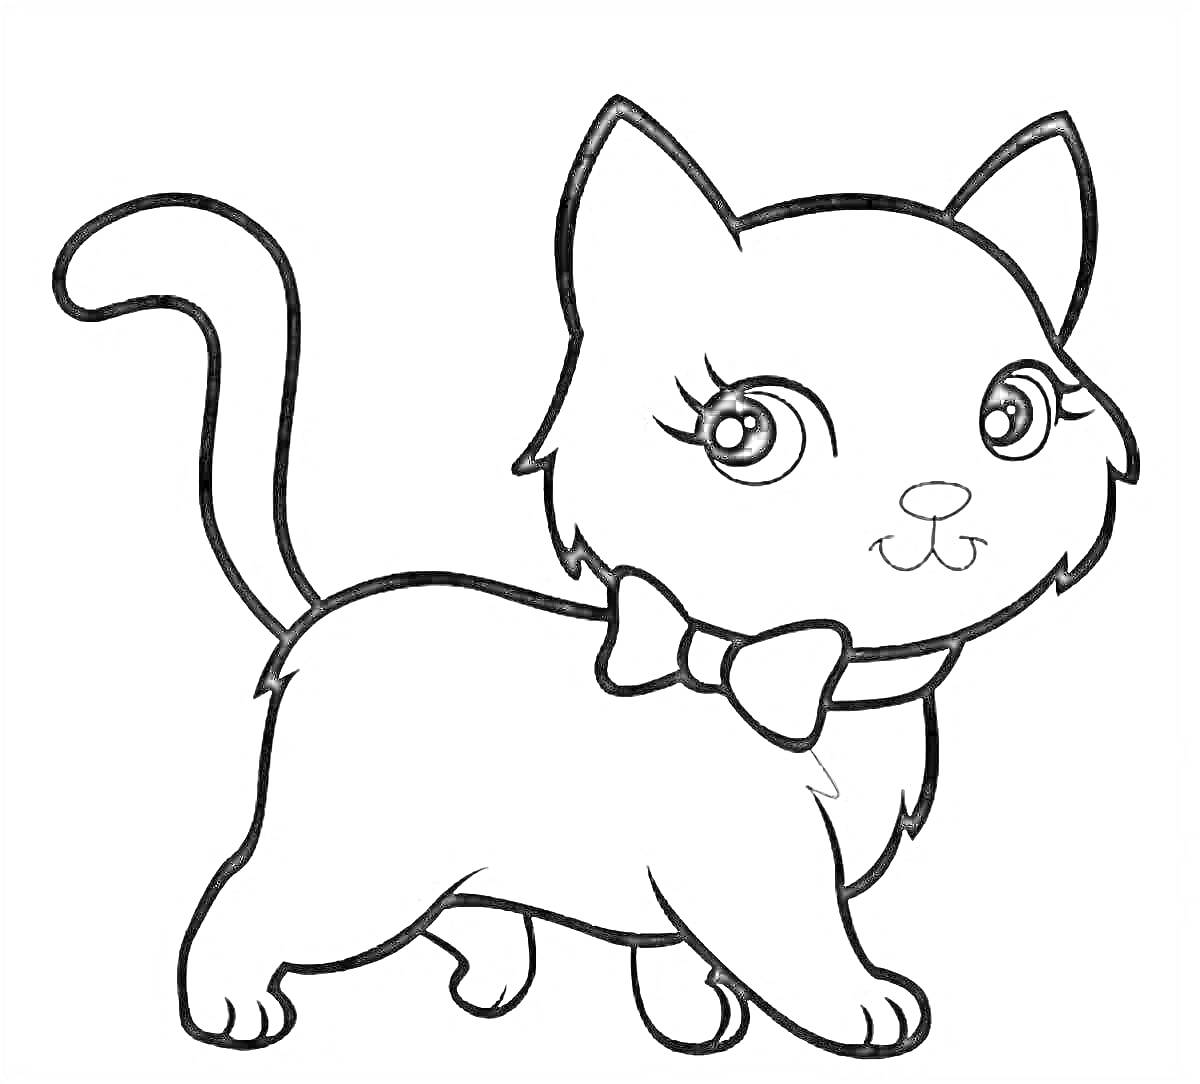 Раскраска Котик с бантиком на шее